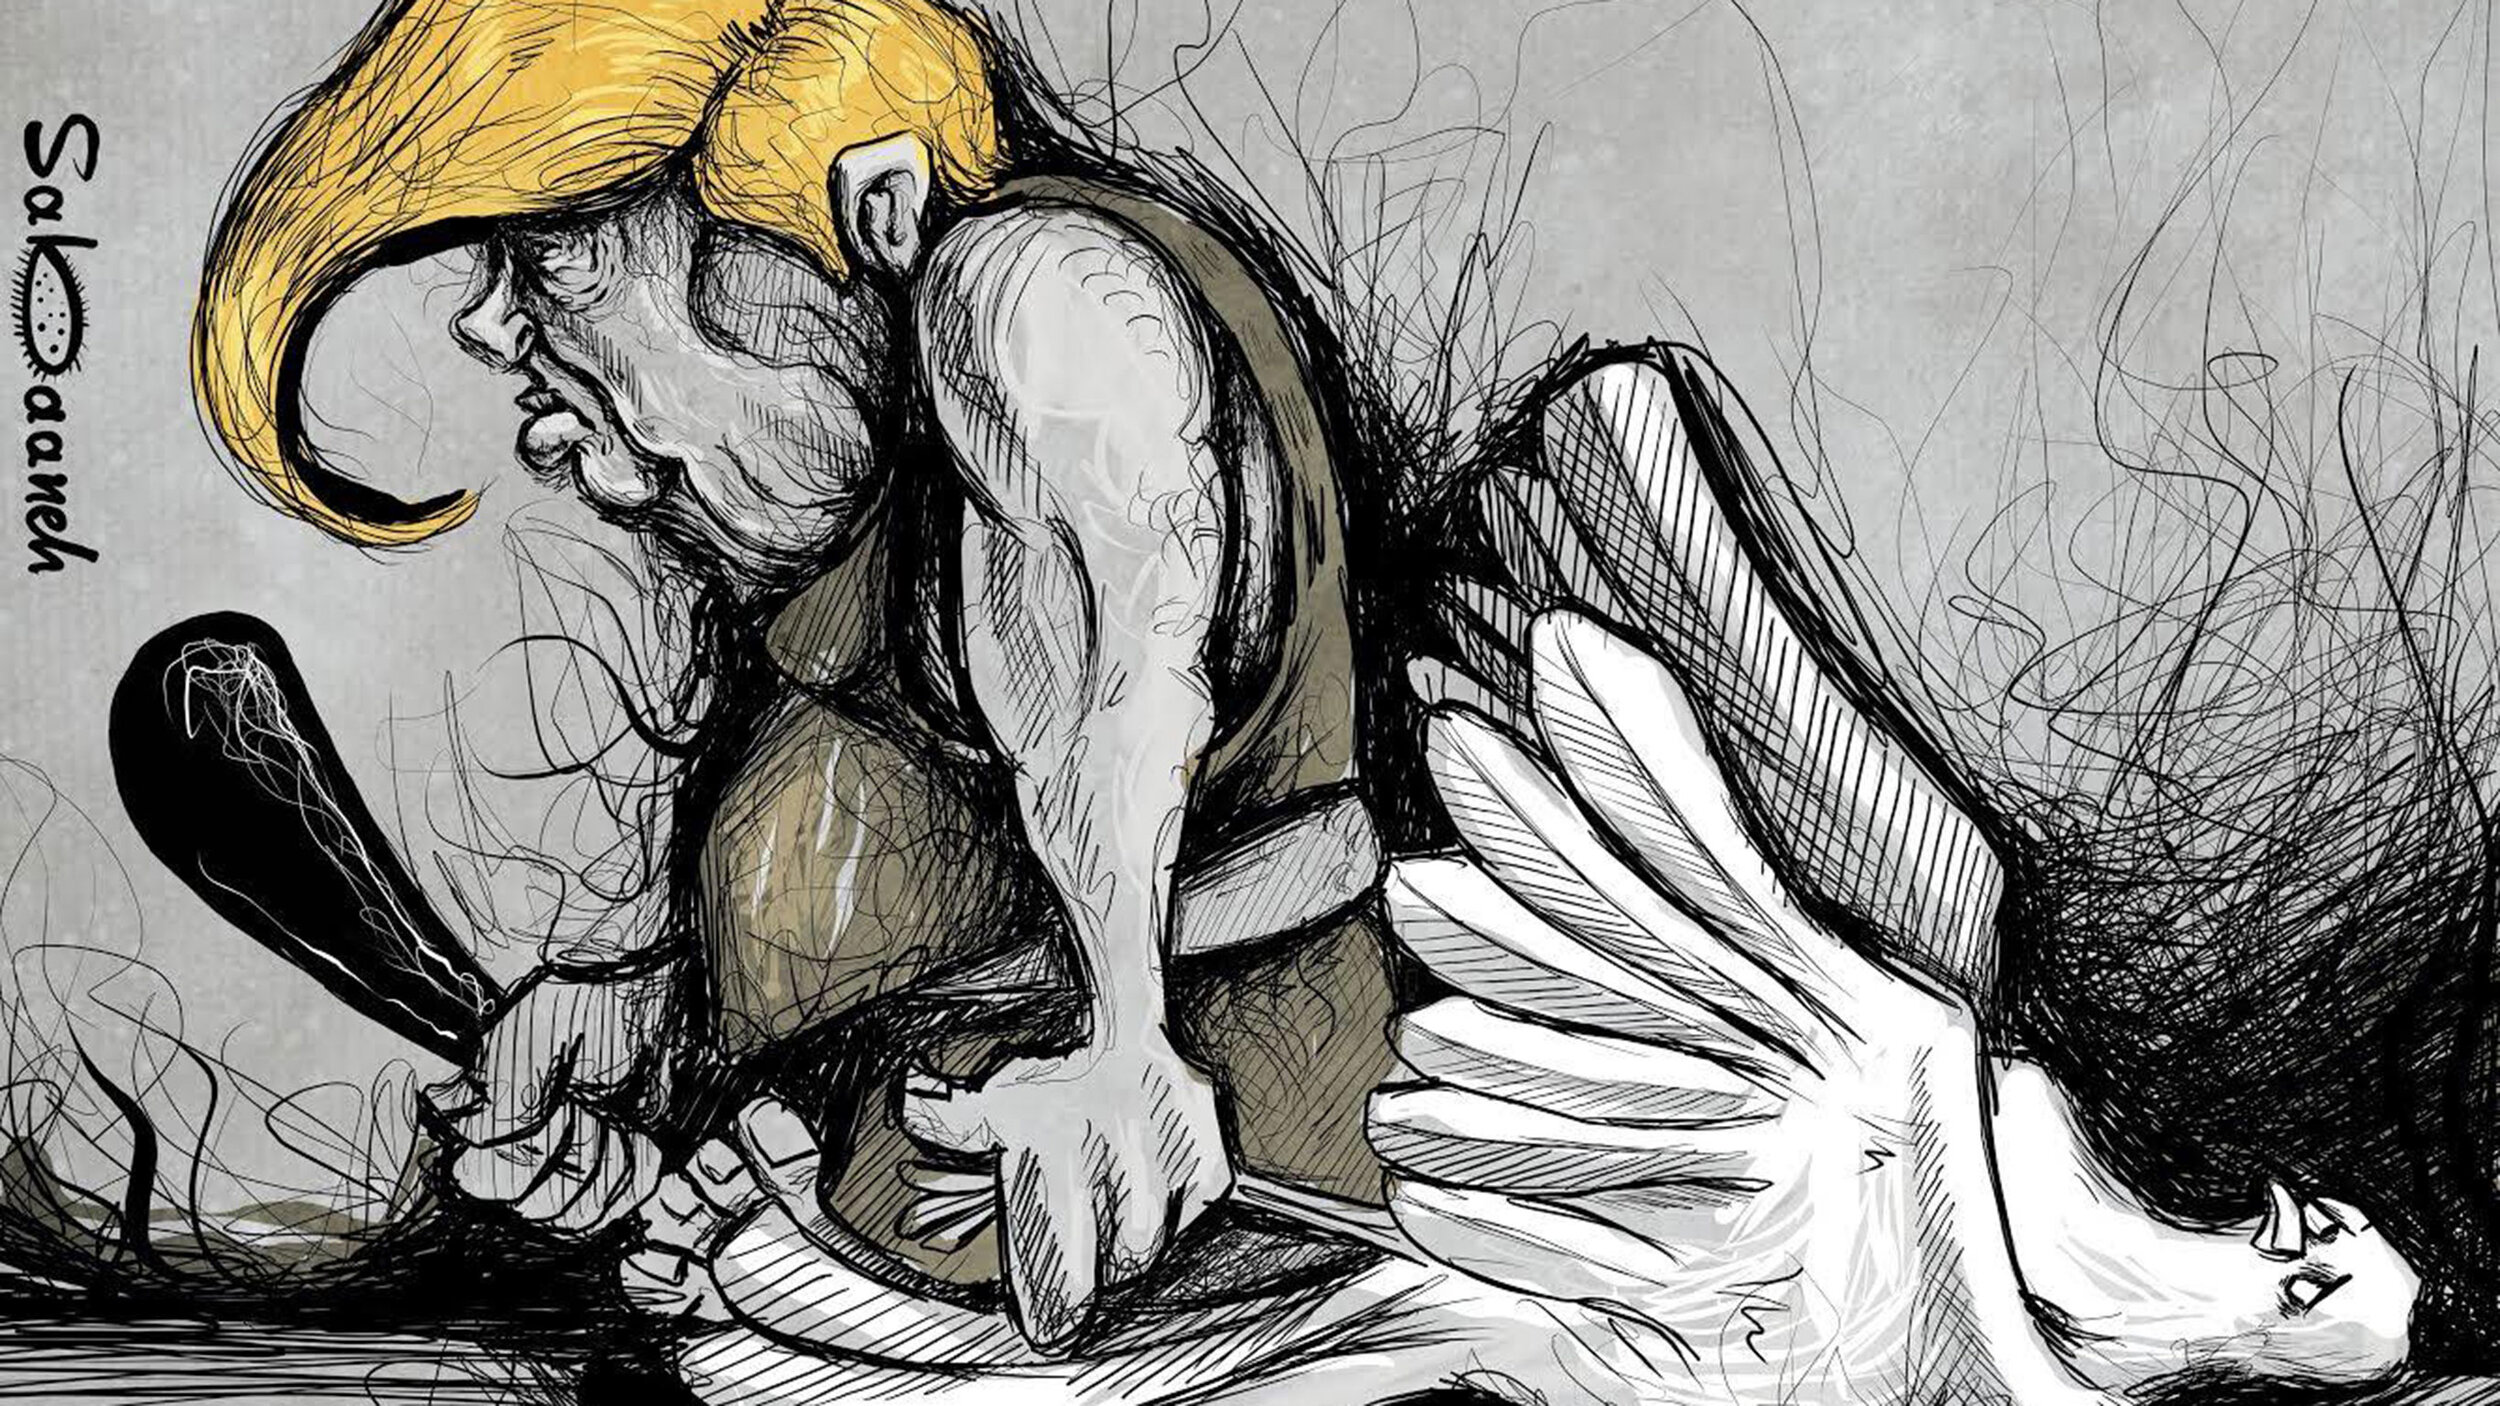 Trump destruyendo la democracia estadounidense, por el caricaturista palestino Mohammad Sabaneeh